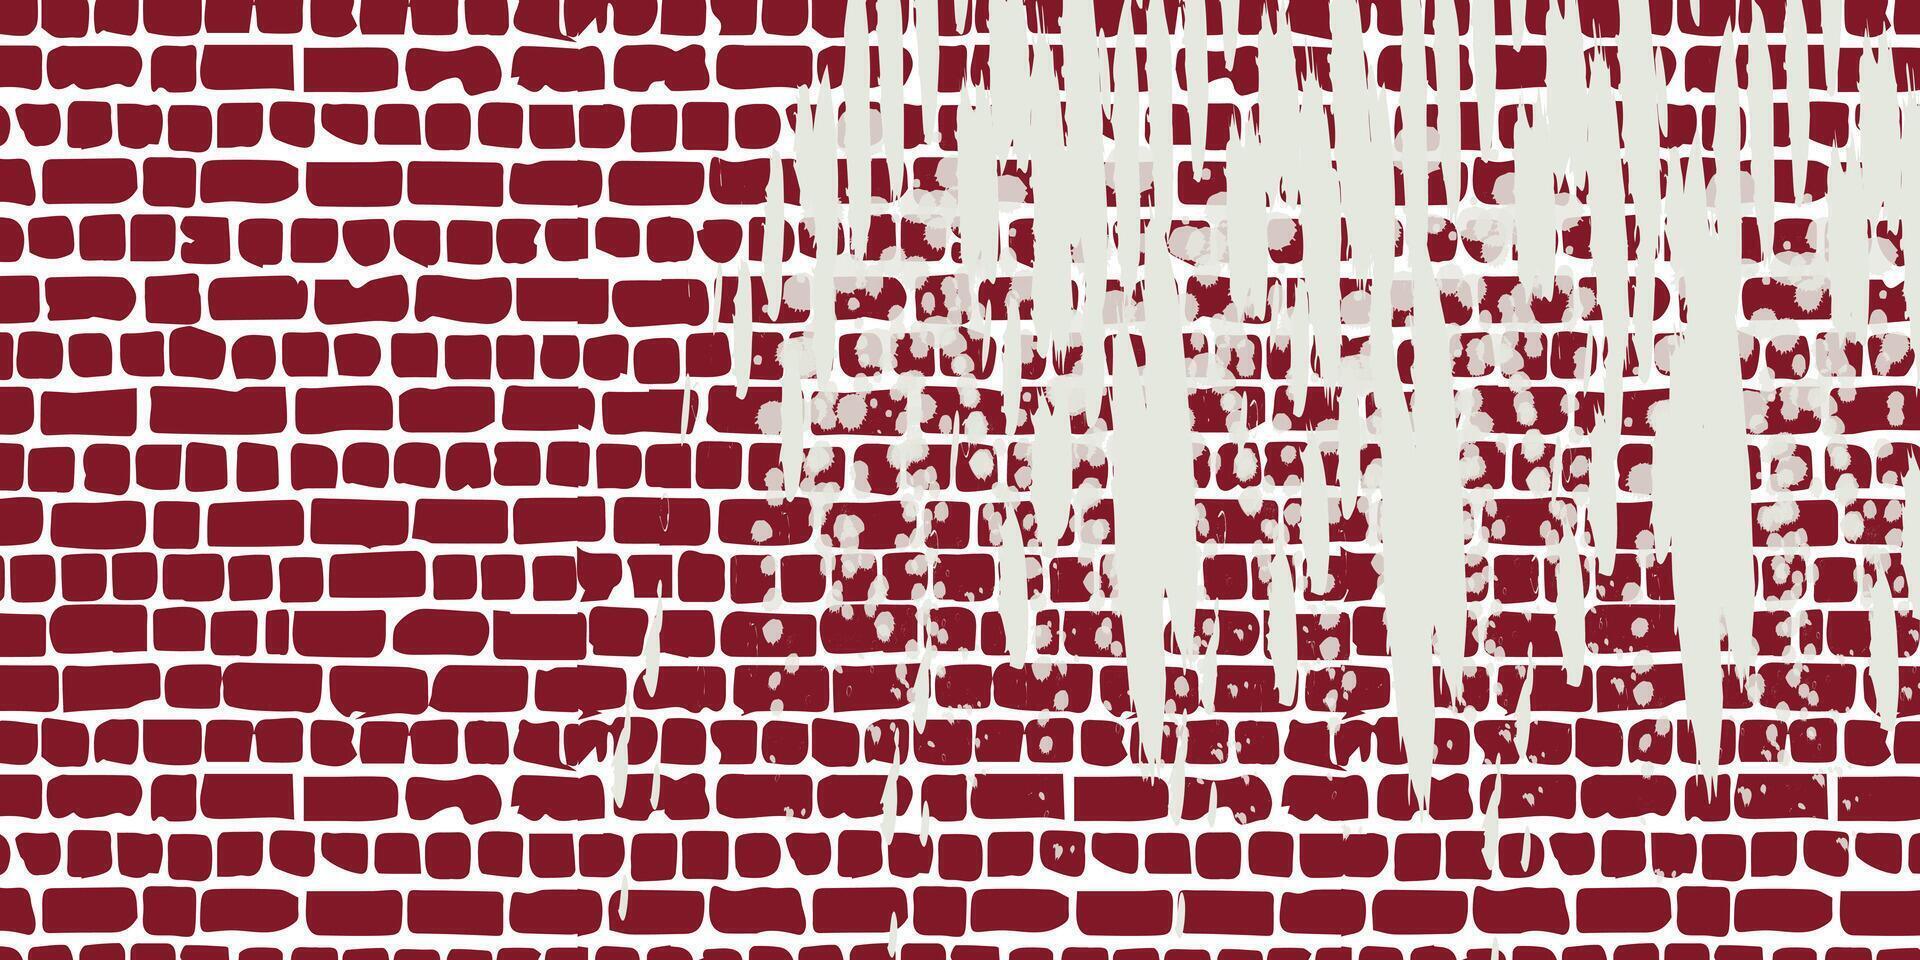 tegel vägg, röd lättnad textur med skugga, vektor bakgrund illustration. röd tegel bricka vägg bakgrund.